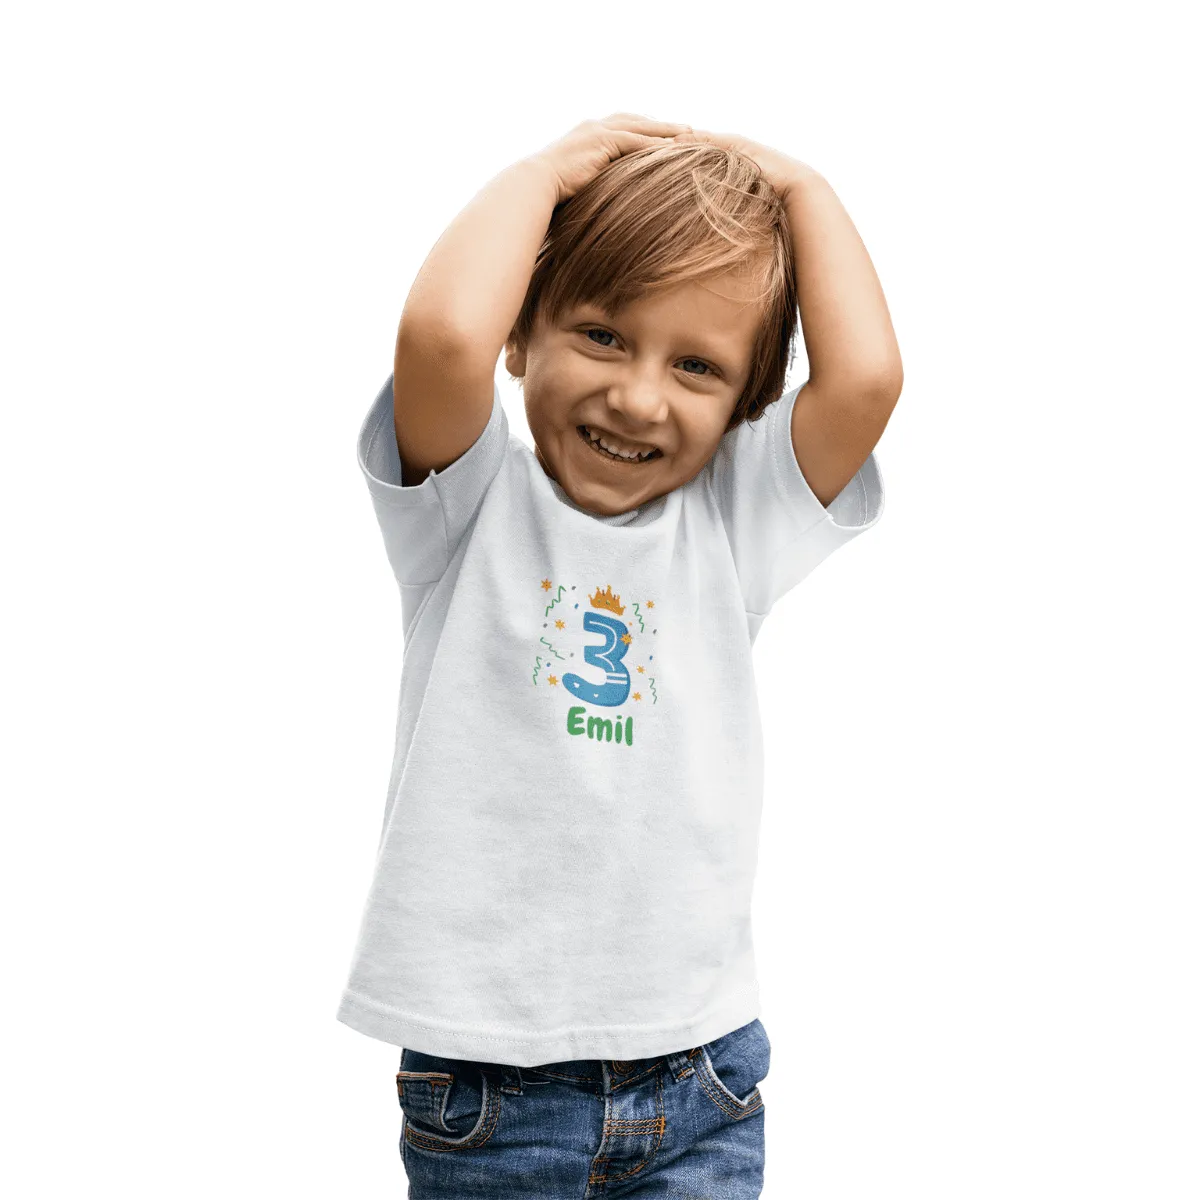 Kinder T-Shirt 3 Jahre mit Wunschname - Junge - Design Krone